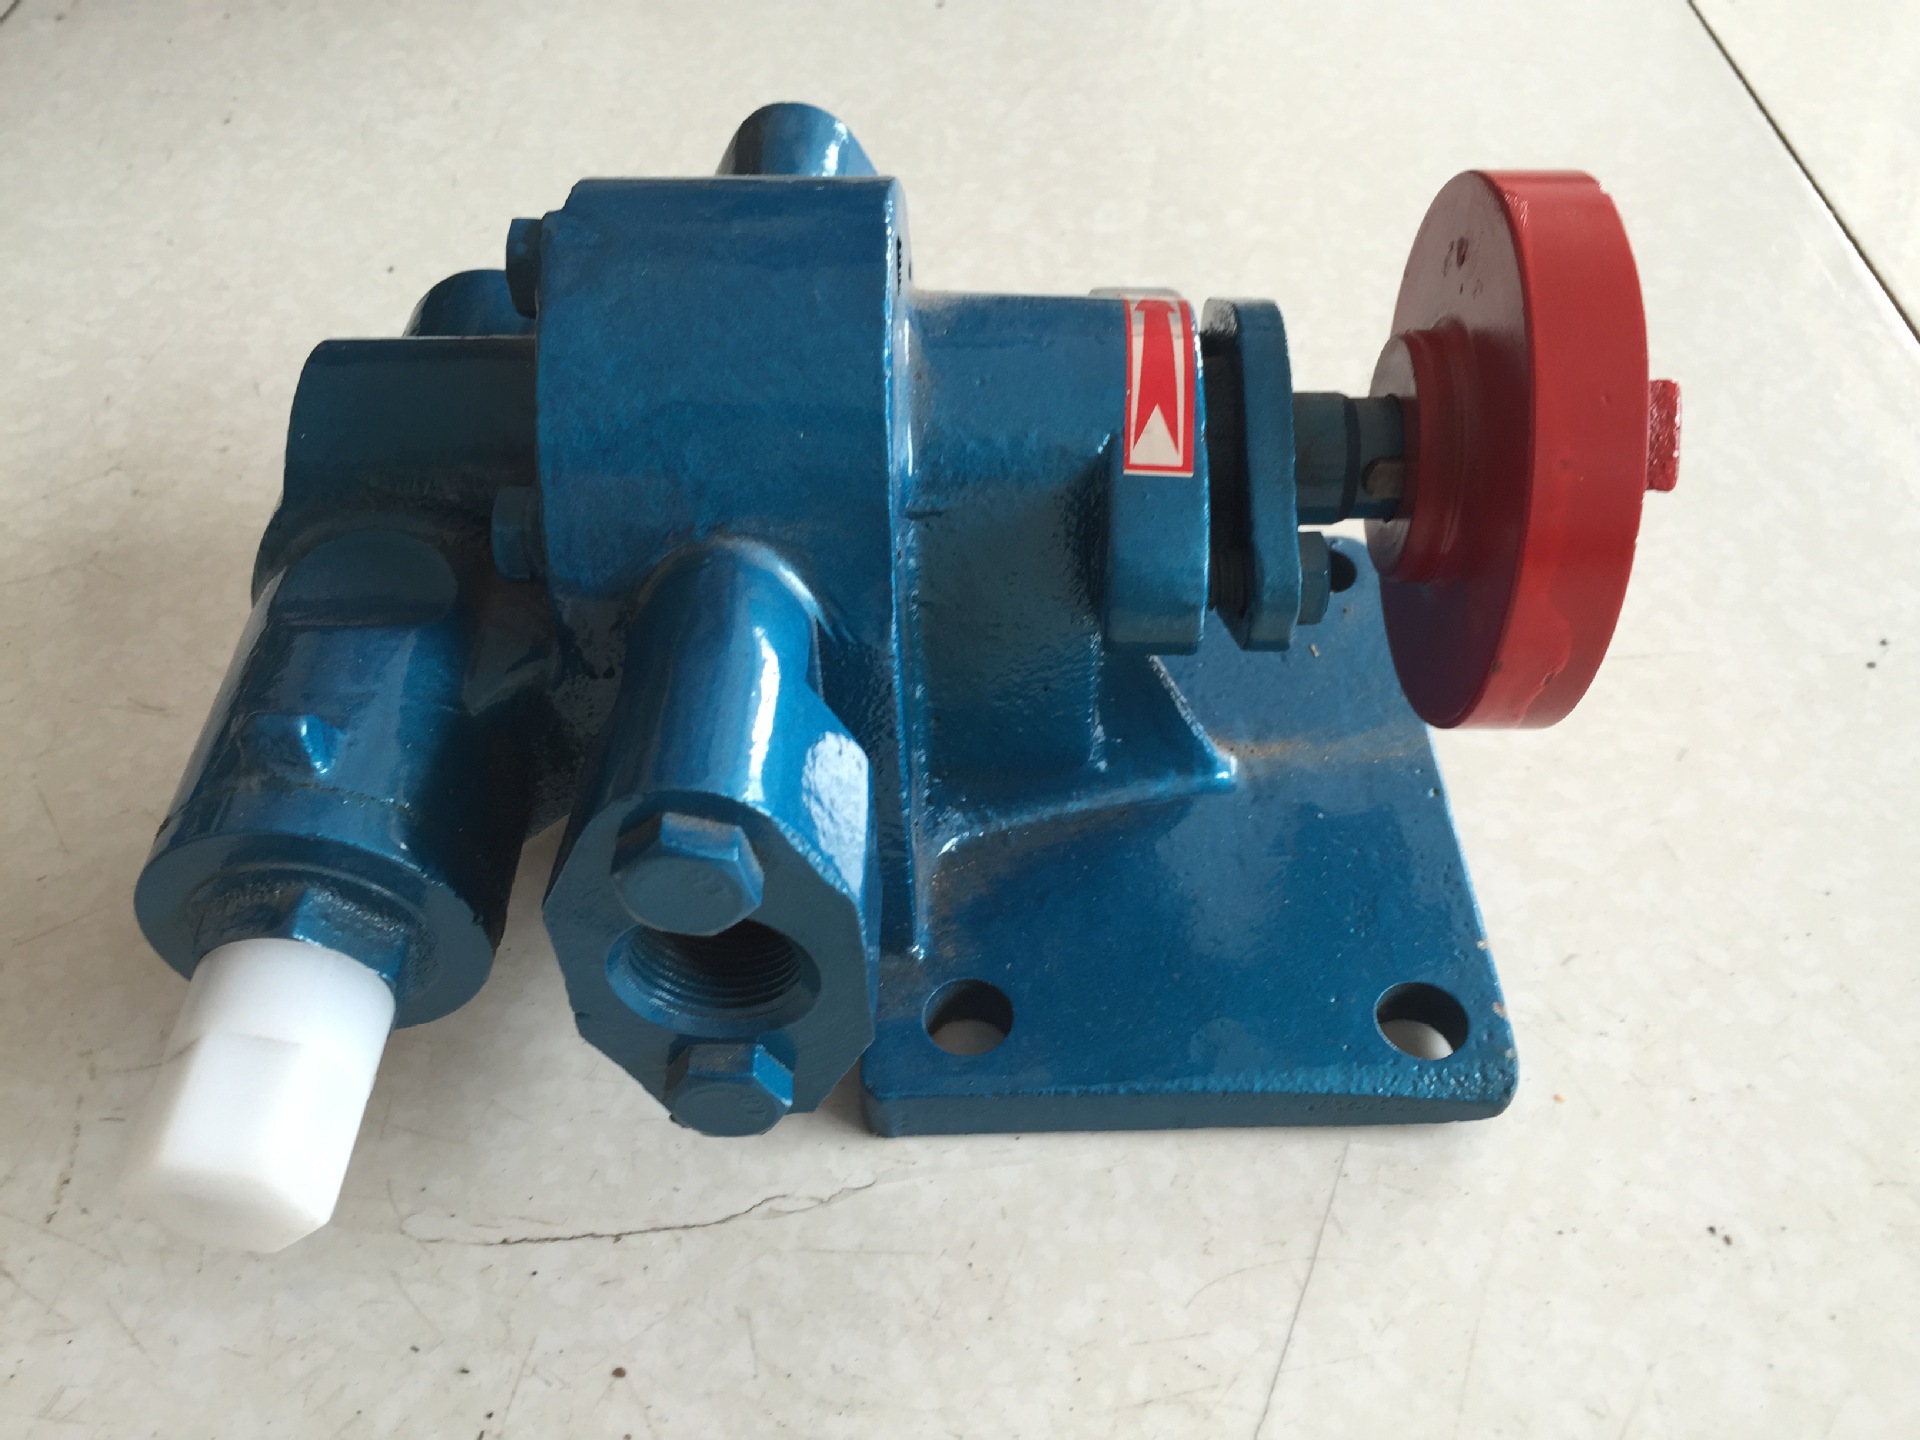 厂家直销齿轮油泵 燃油泵 油泵输油泵 可定做 立式泵